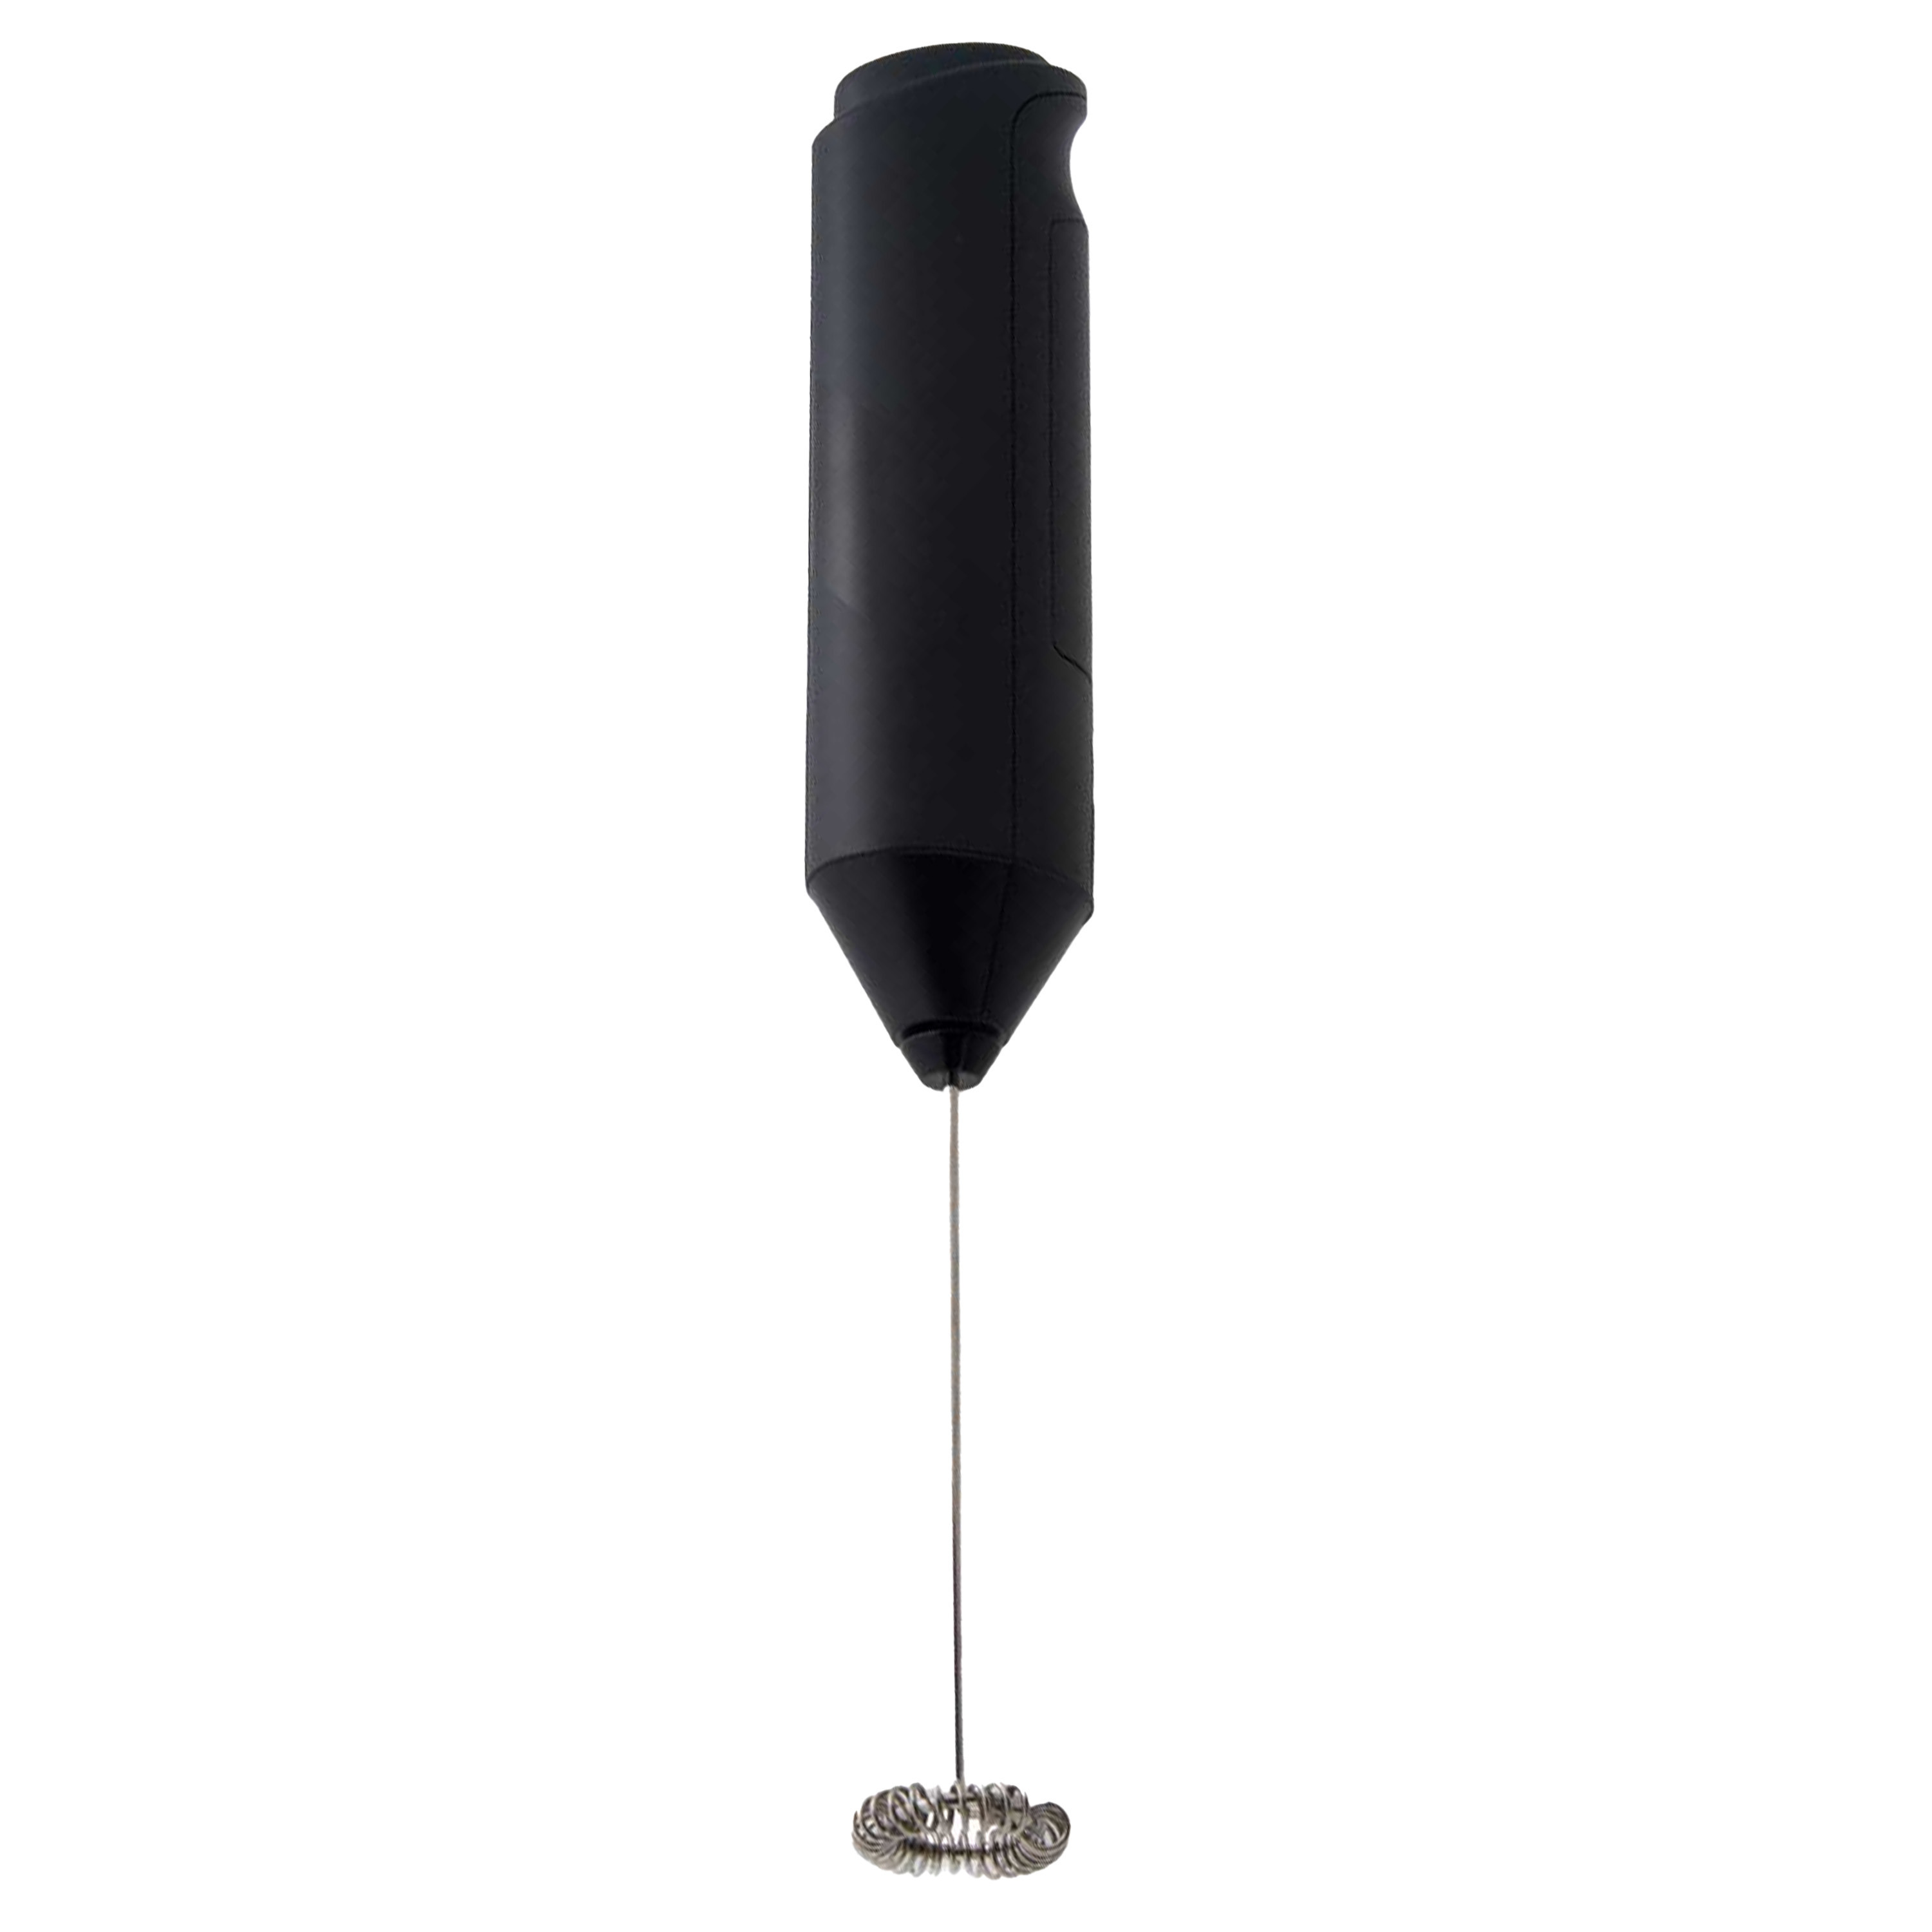 Melkopschuimer zwart metaal-kunststof op batterijen 3,5 x 22,4 cm